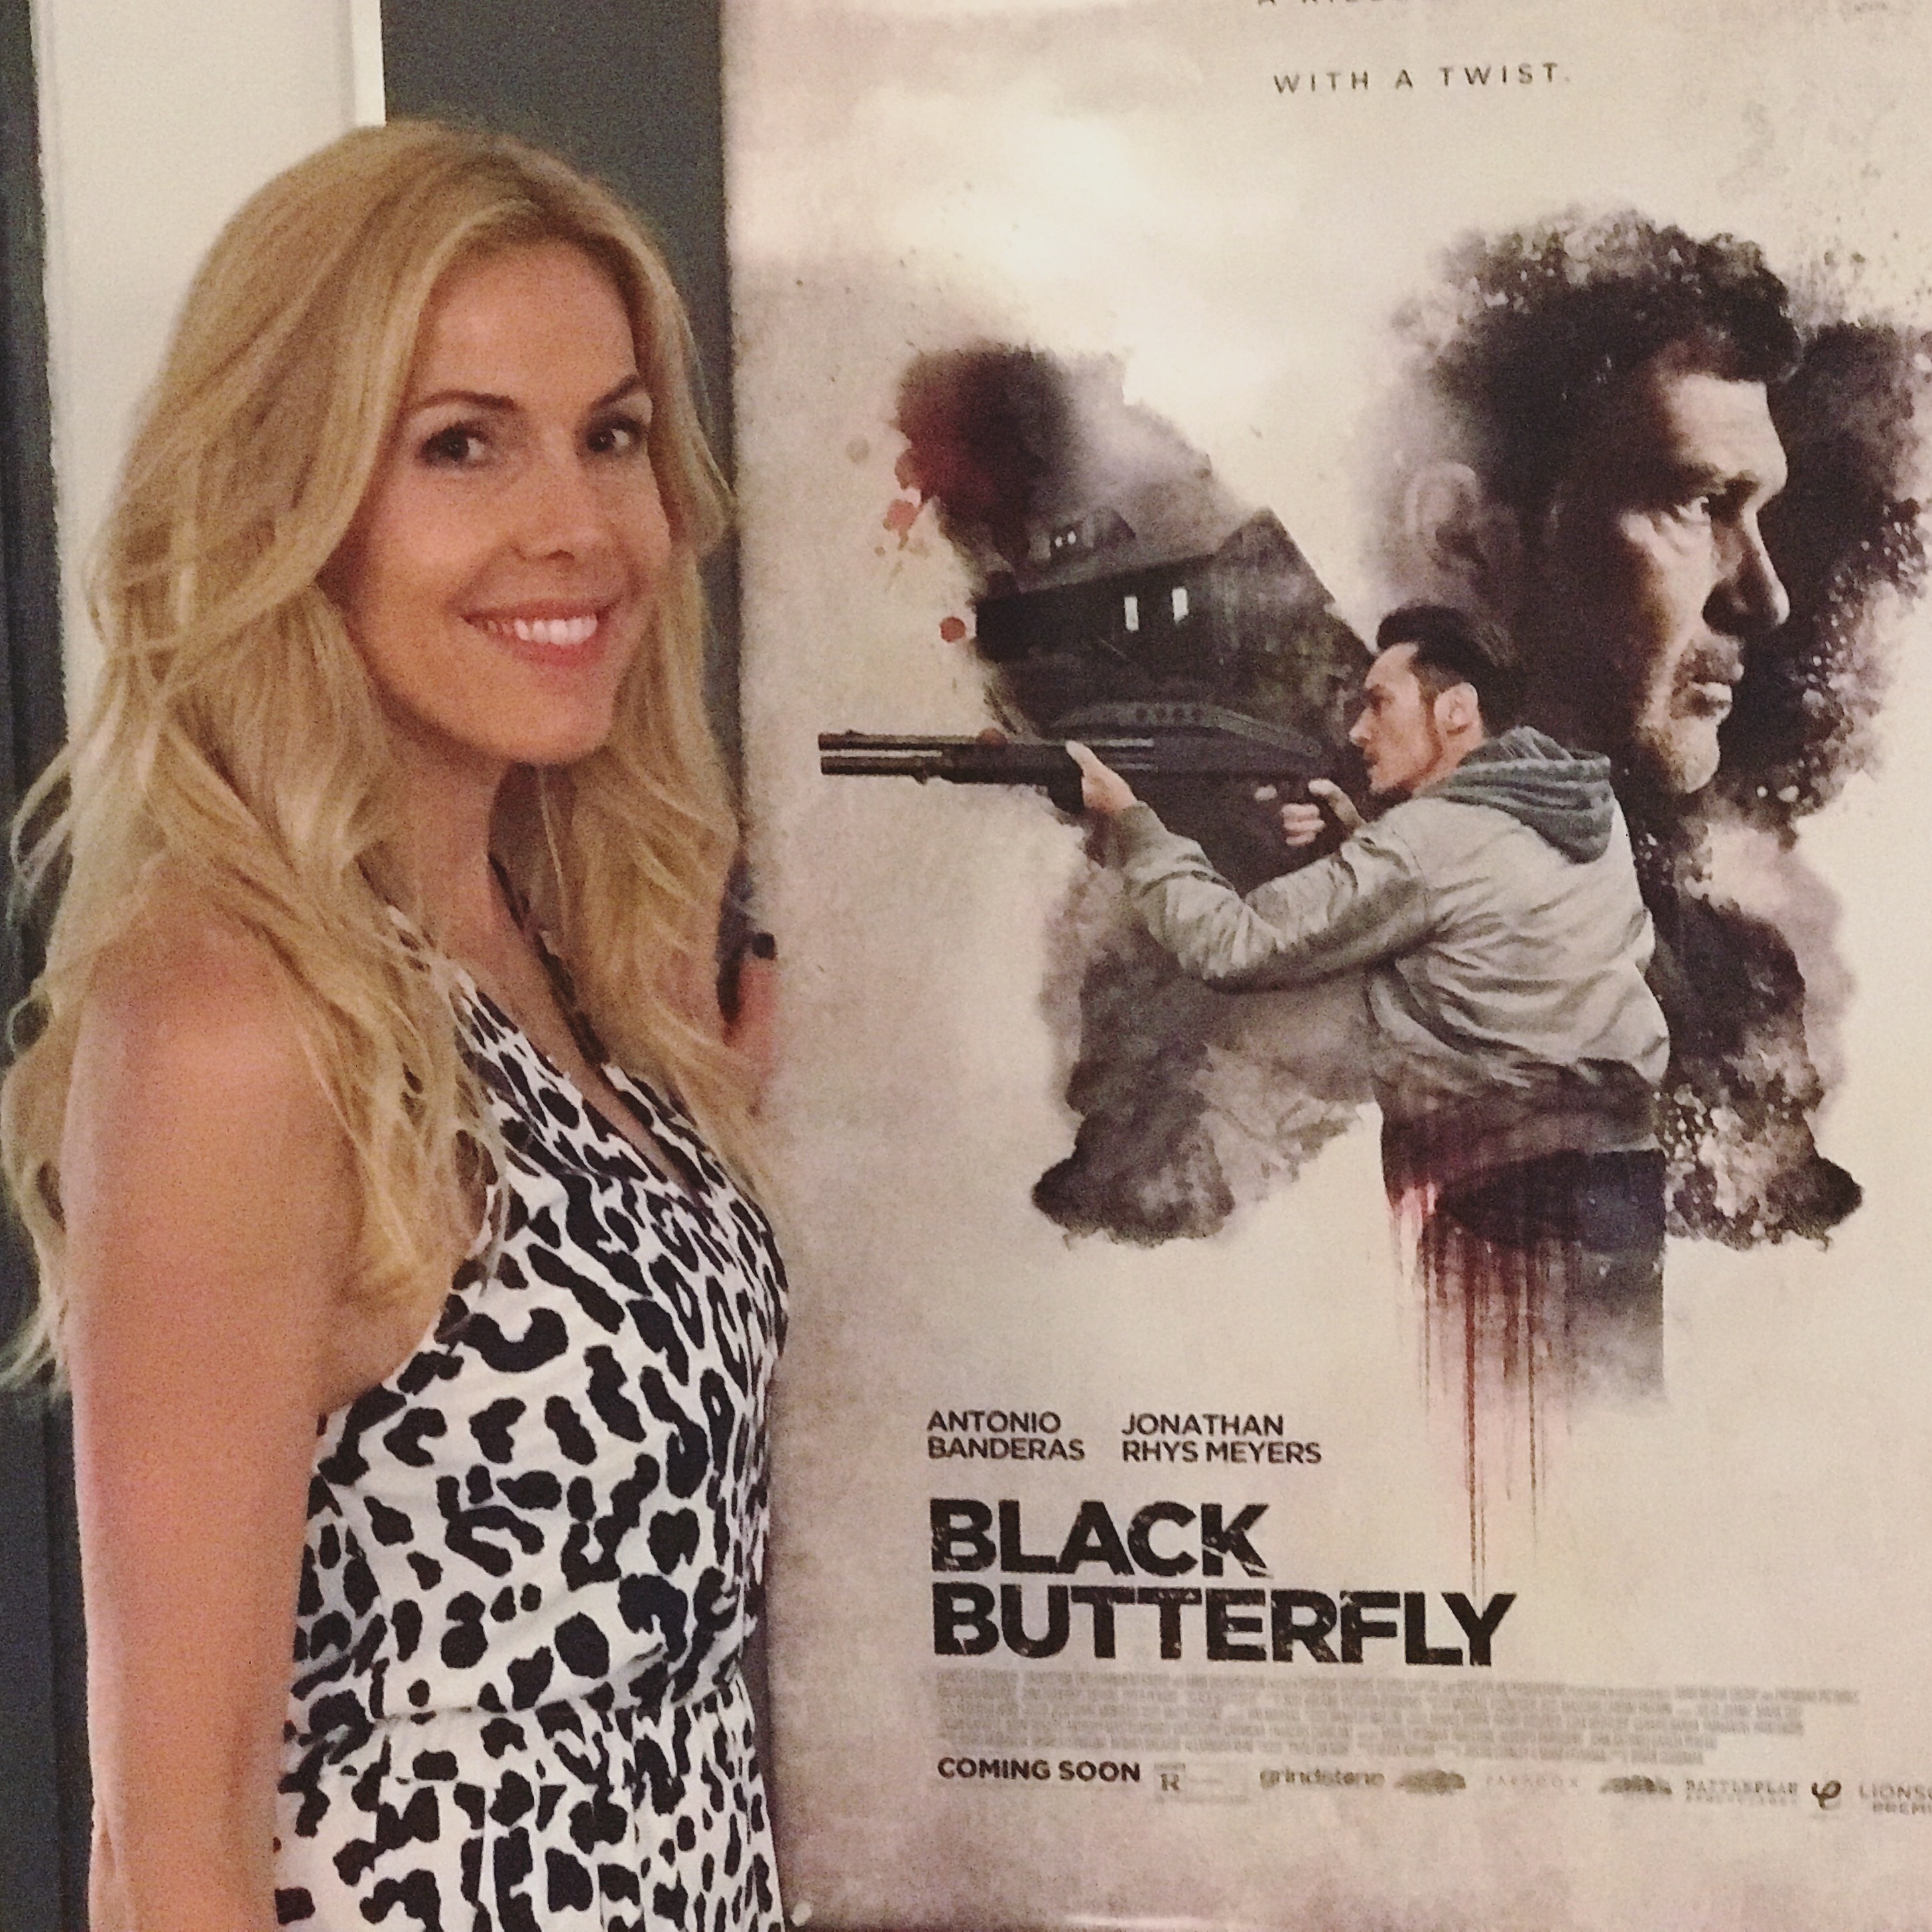 Alexandra Klim präsentiert Black Butterfly bei der Movie Night in Lugano